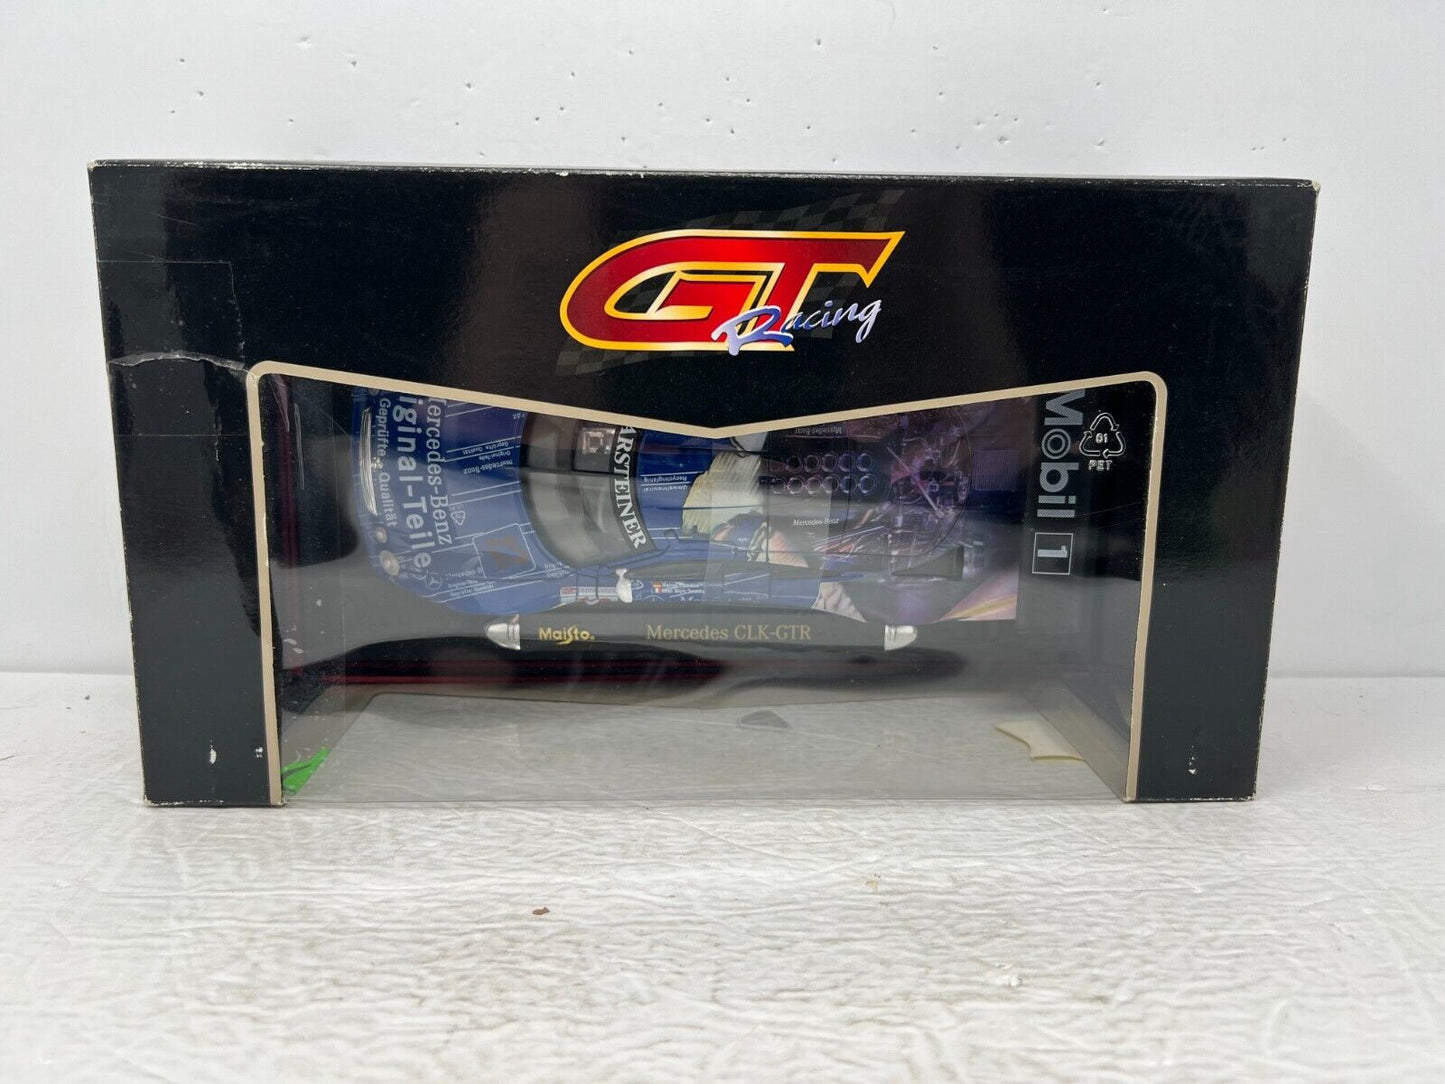 Maisto Mercedes CLK-GTR GT Racing 1:18 Diecast